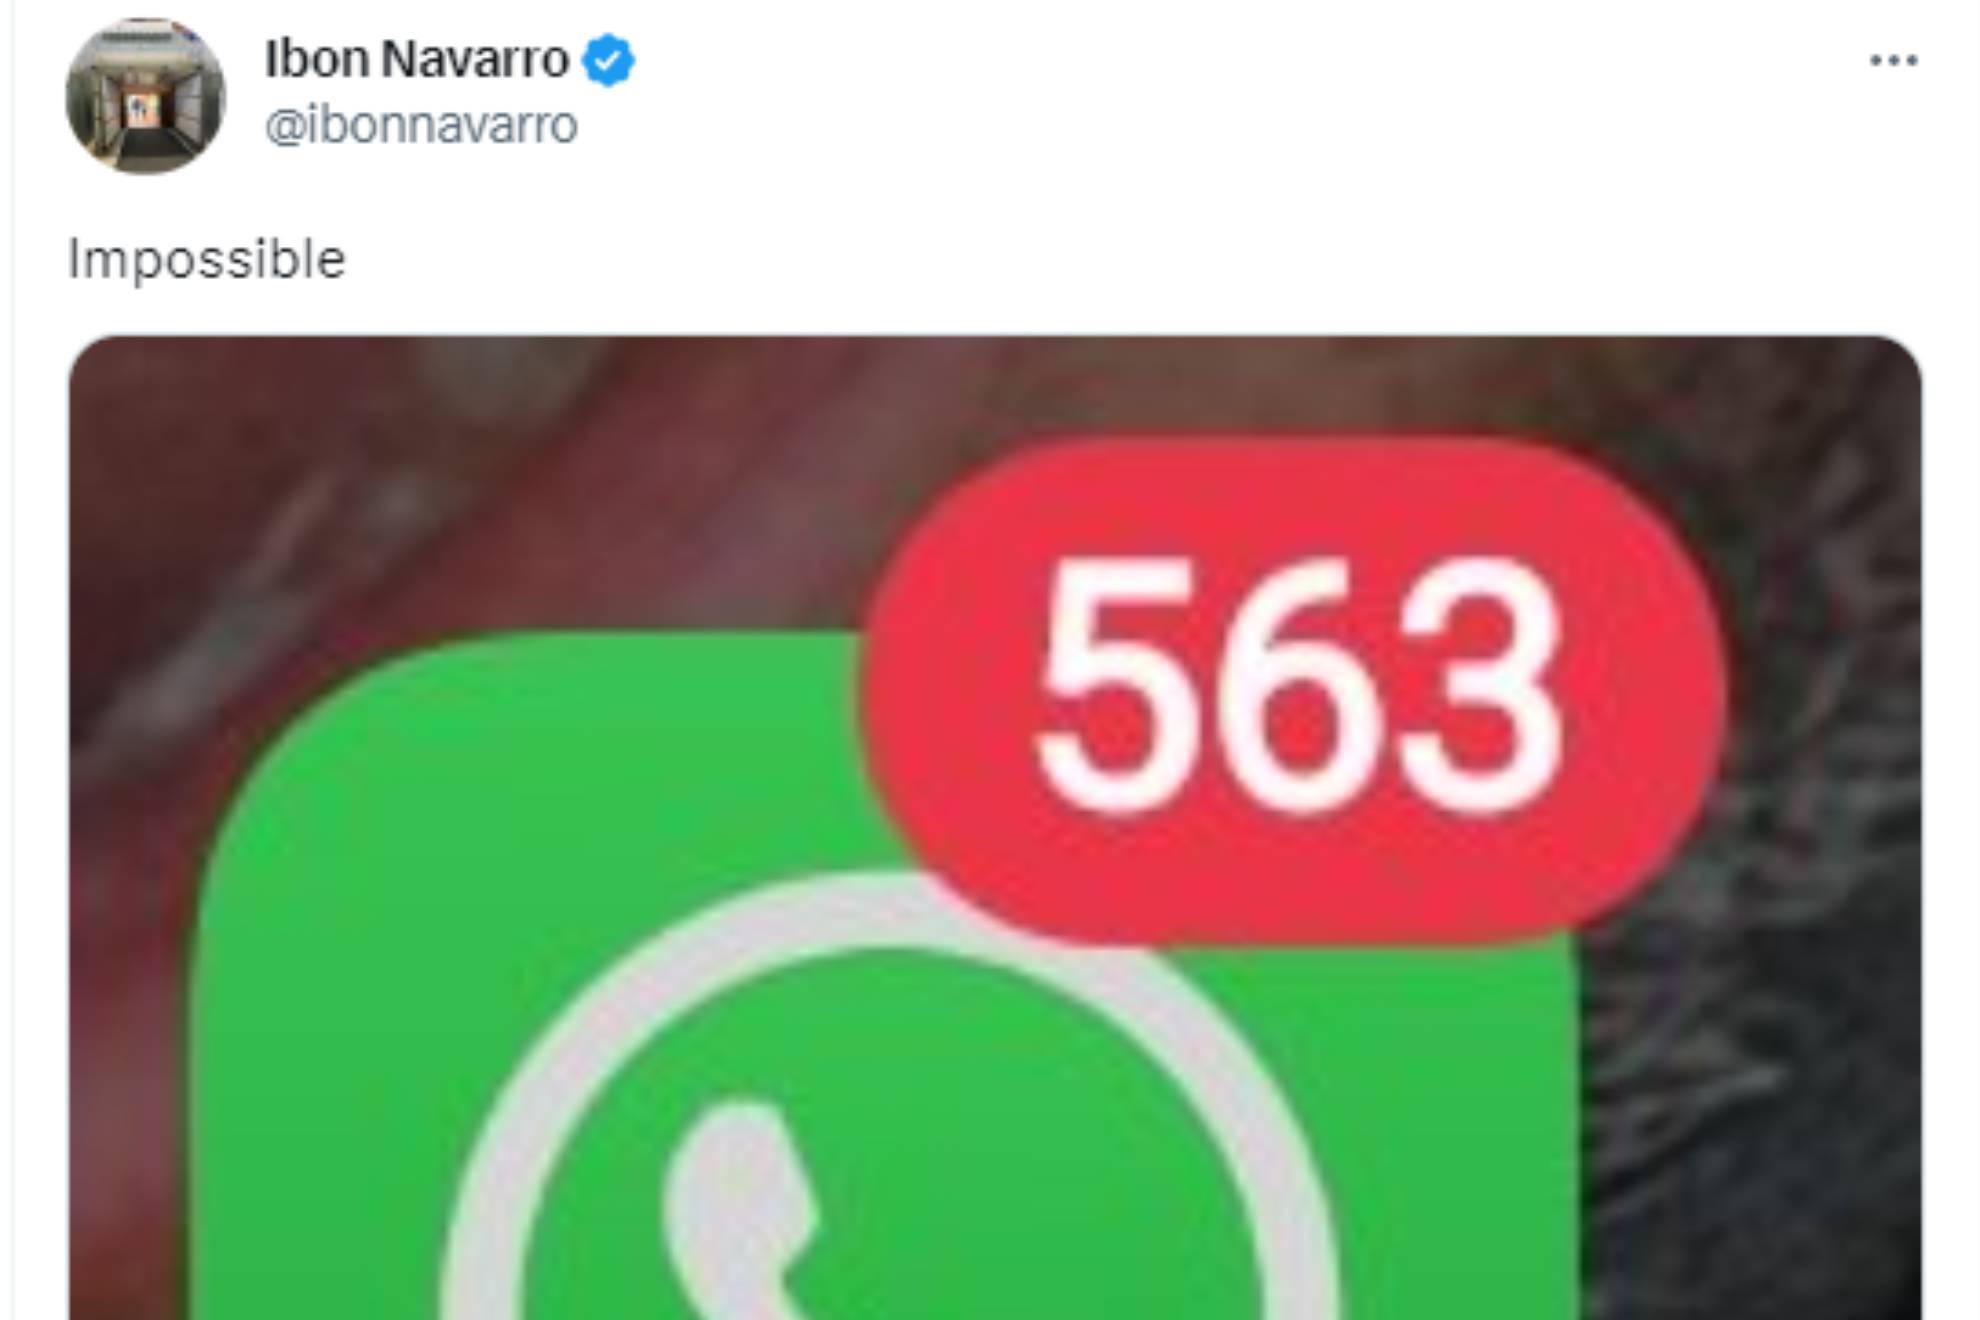 El móvil de Ibon Navarro casi revienta después de ganar la Copa